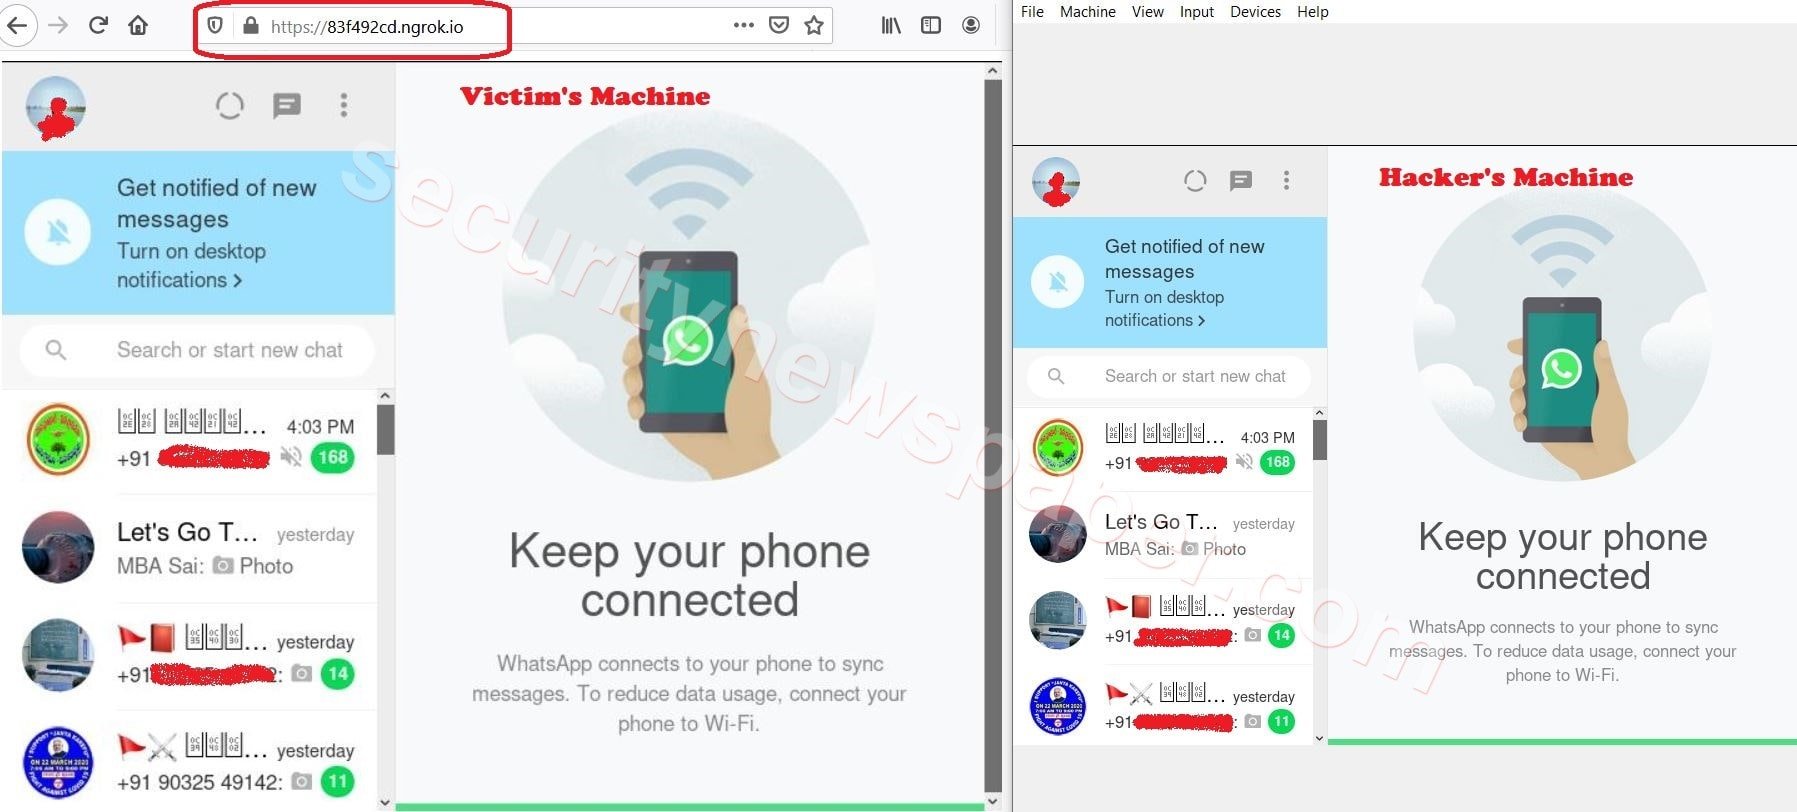 сохранение фото из whatsapp в галерею android